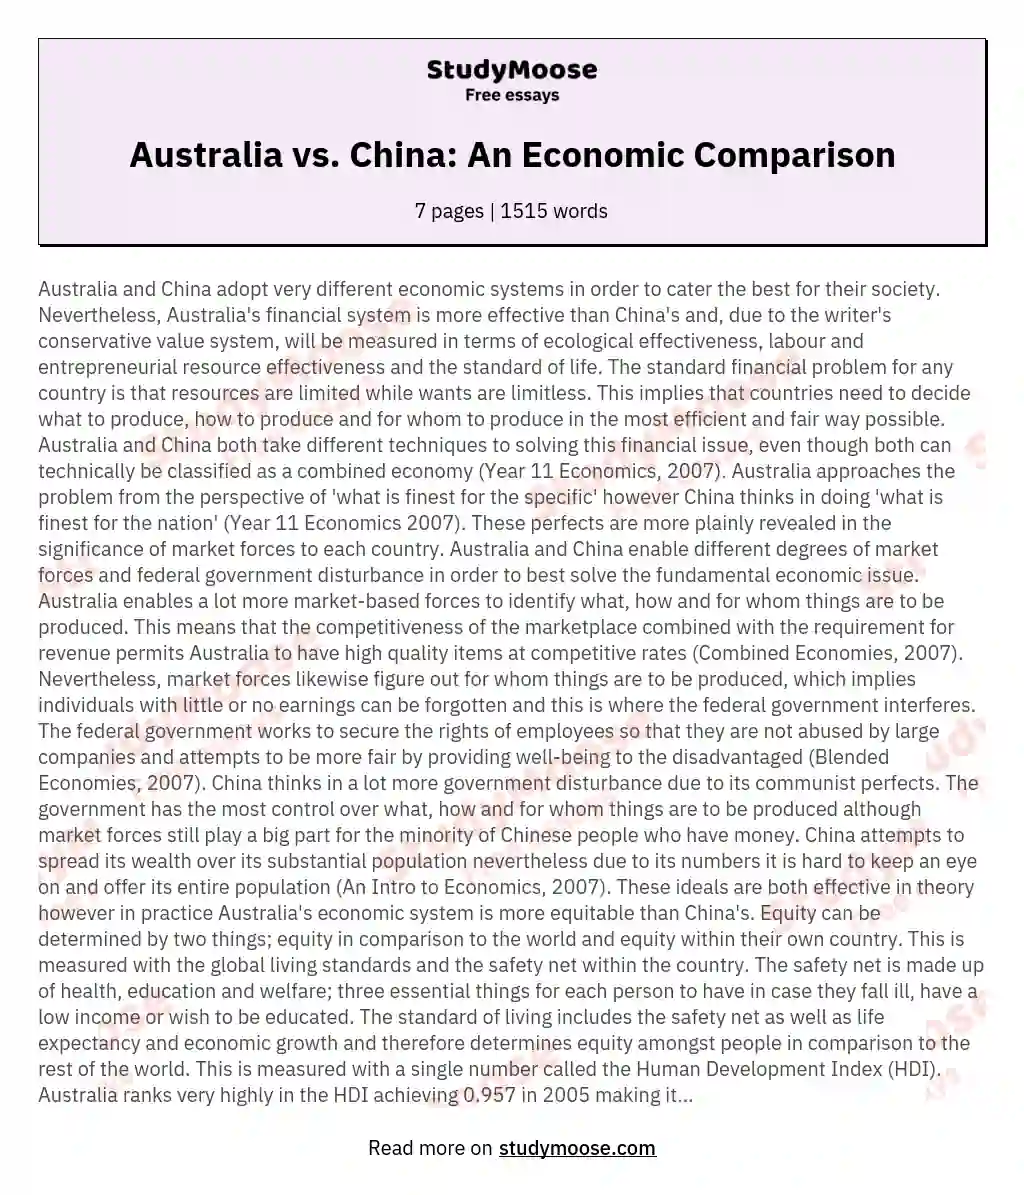 Australia vs. China: An Economic Comparison essay